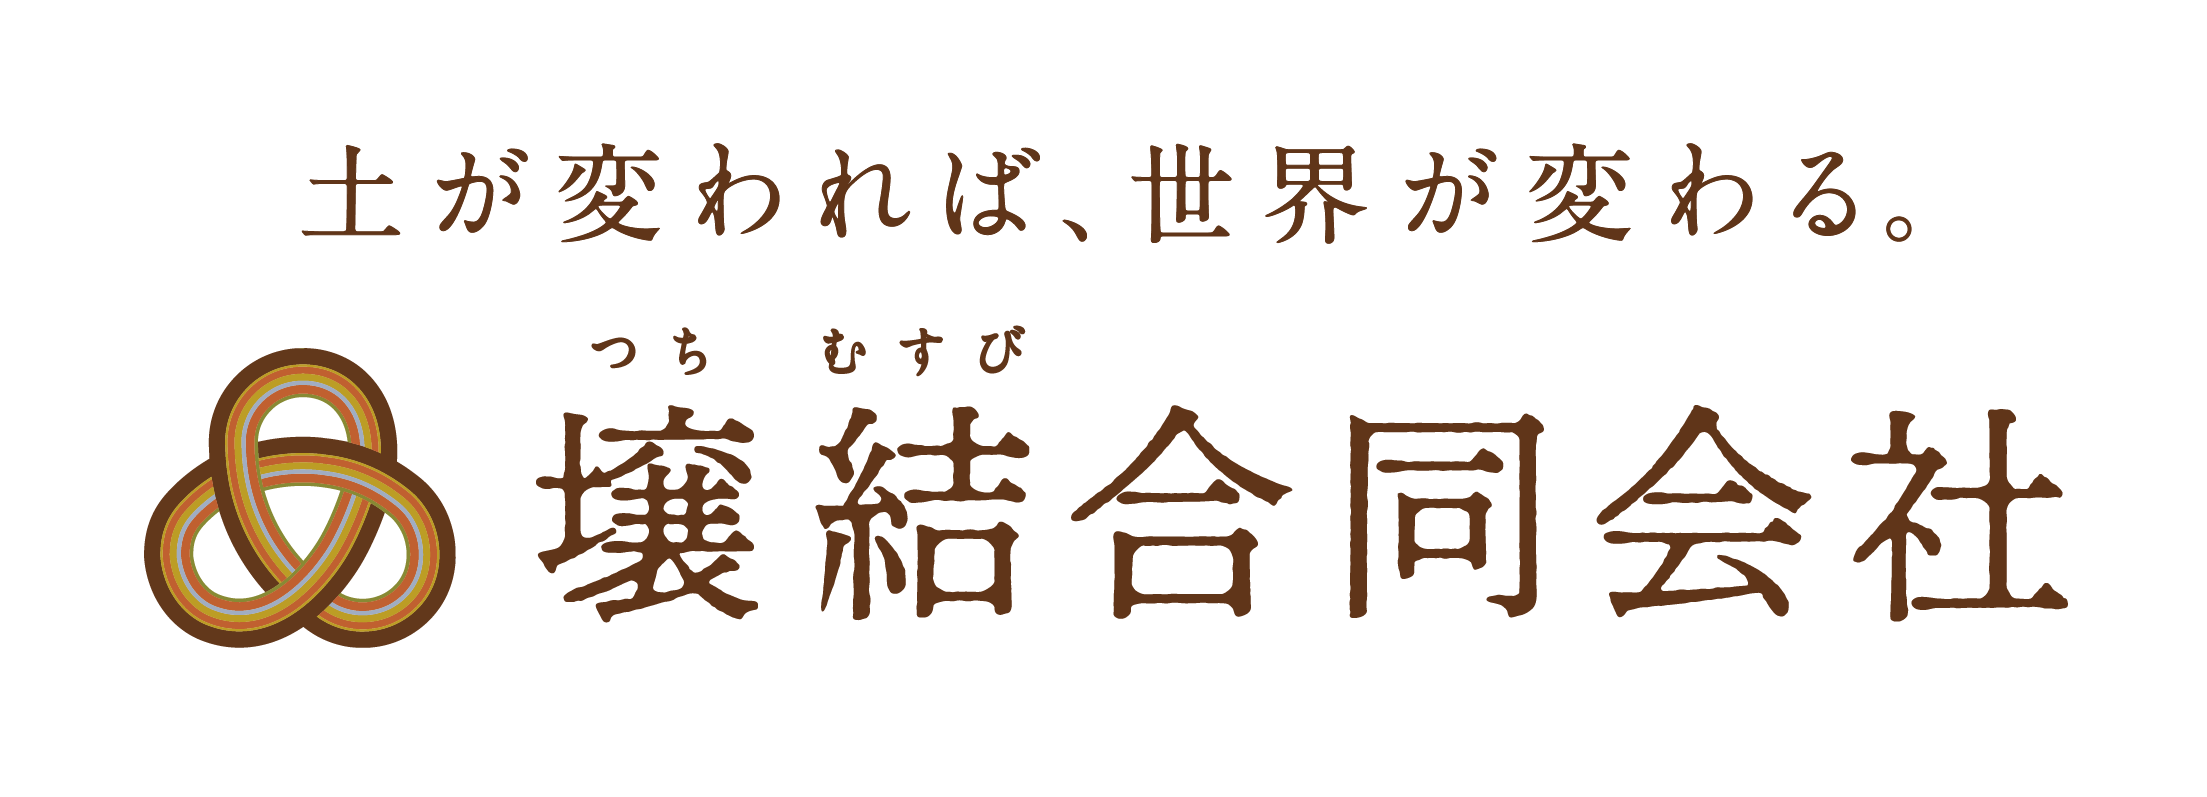 日本一のさつまいも集団「SAZANKA FARM（サザンカファーム）」が「八百結び®プロジェクト」へ協業参画・戦略...